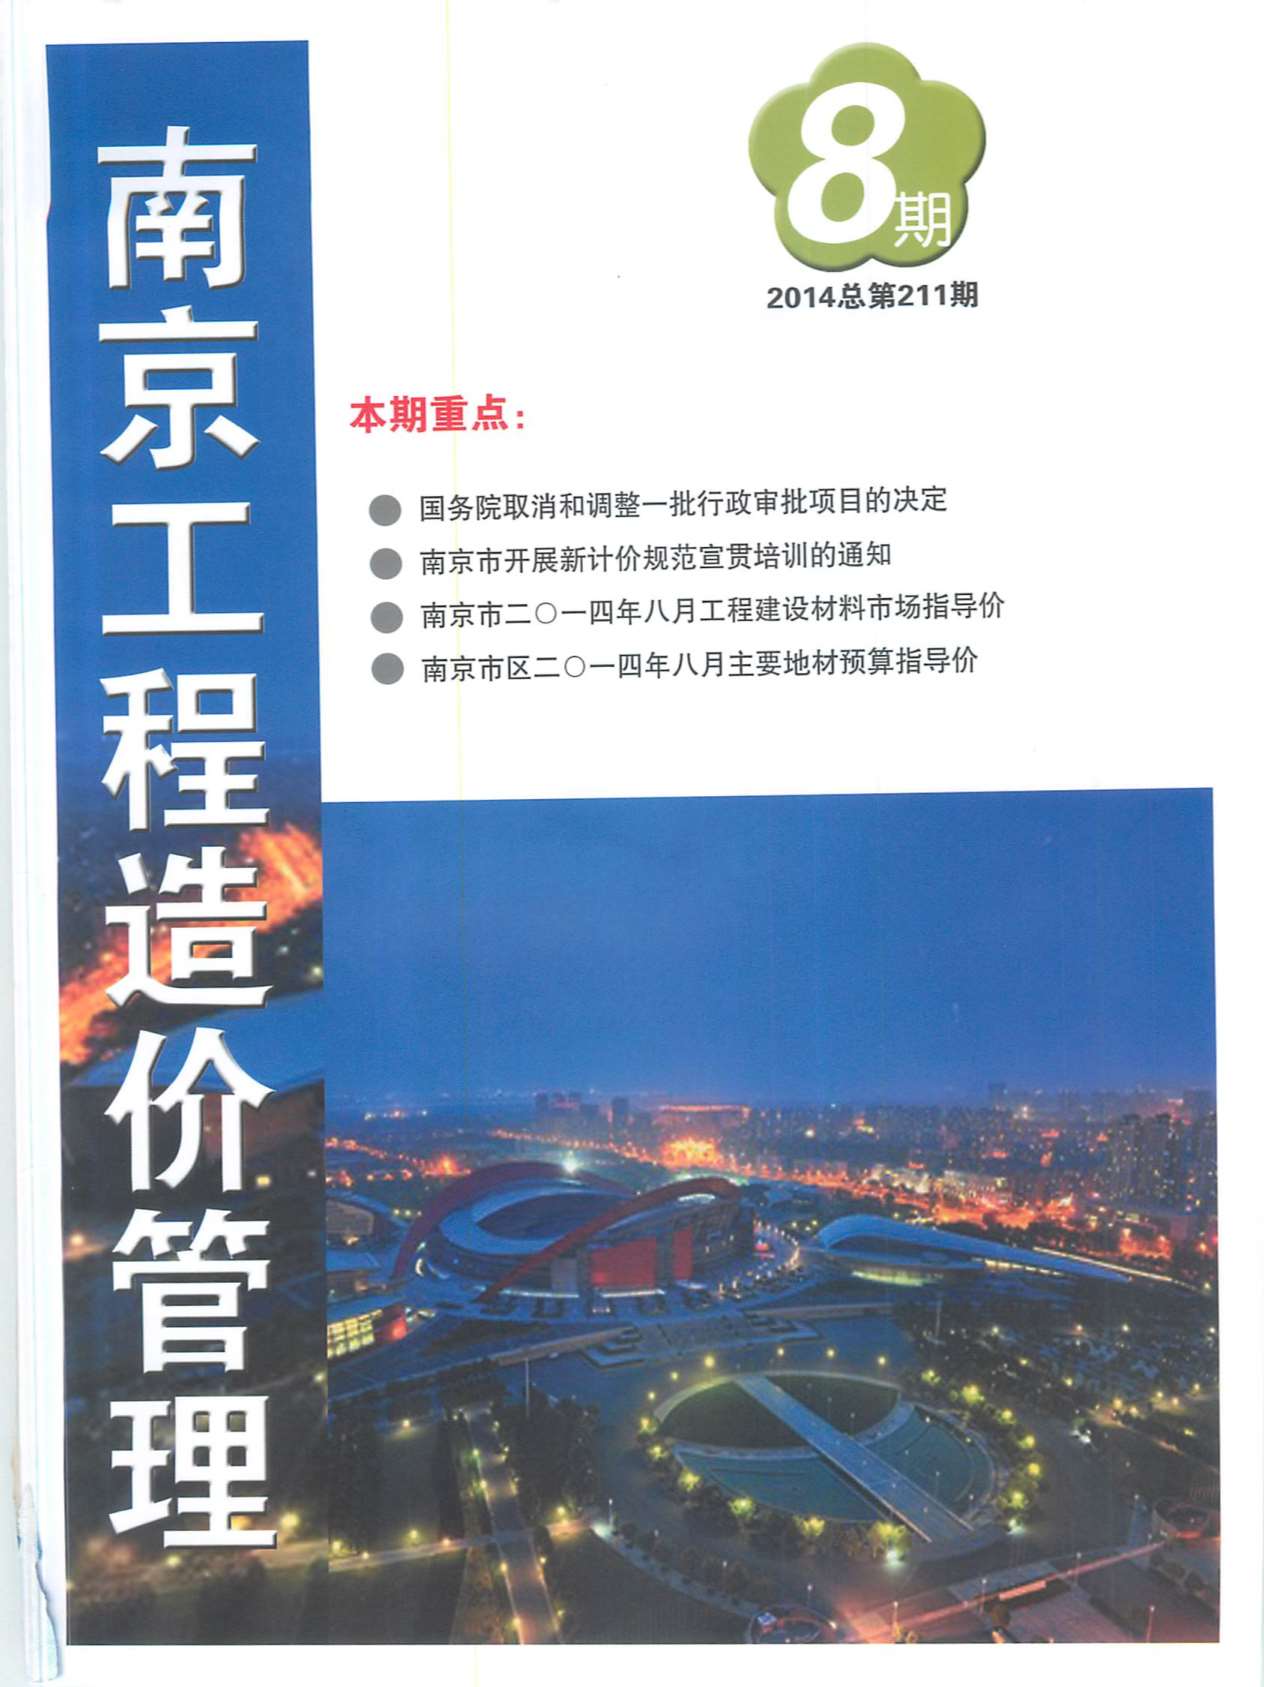 南京市2014年8月造价库信息造价库信息网